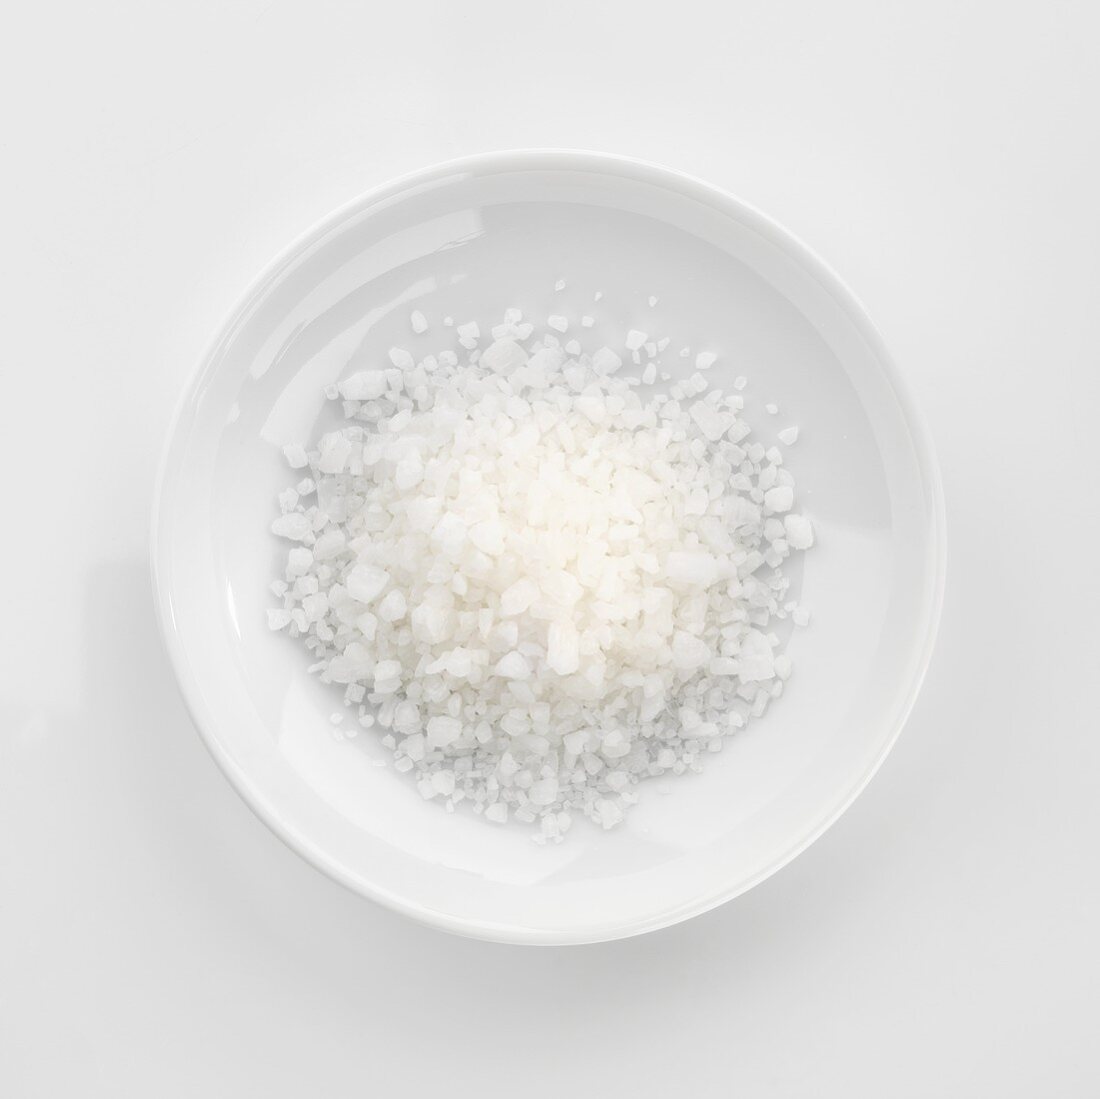 Coarse salt in white dish